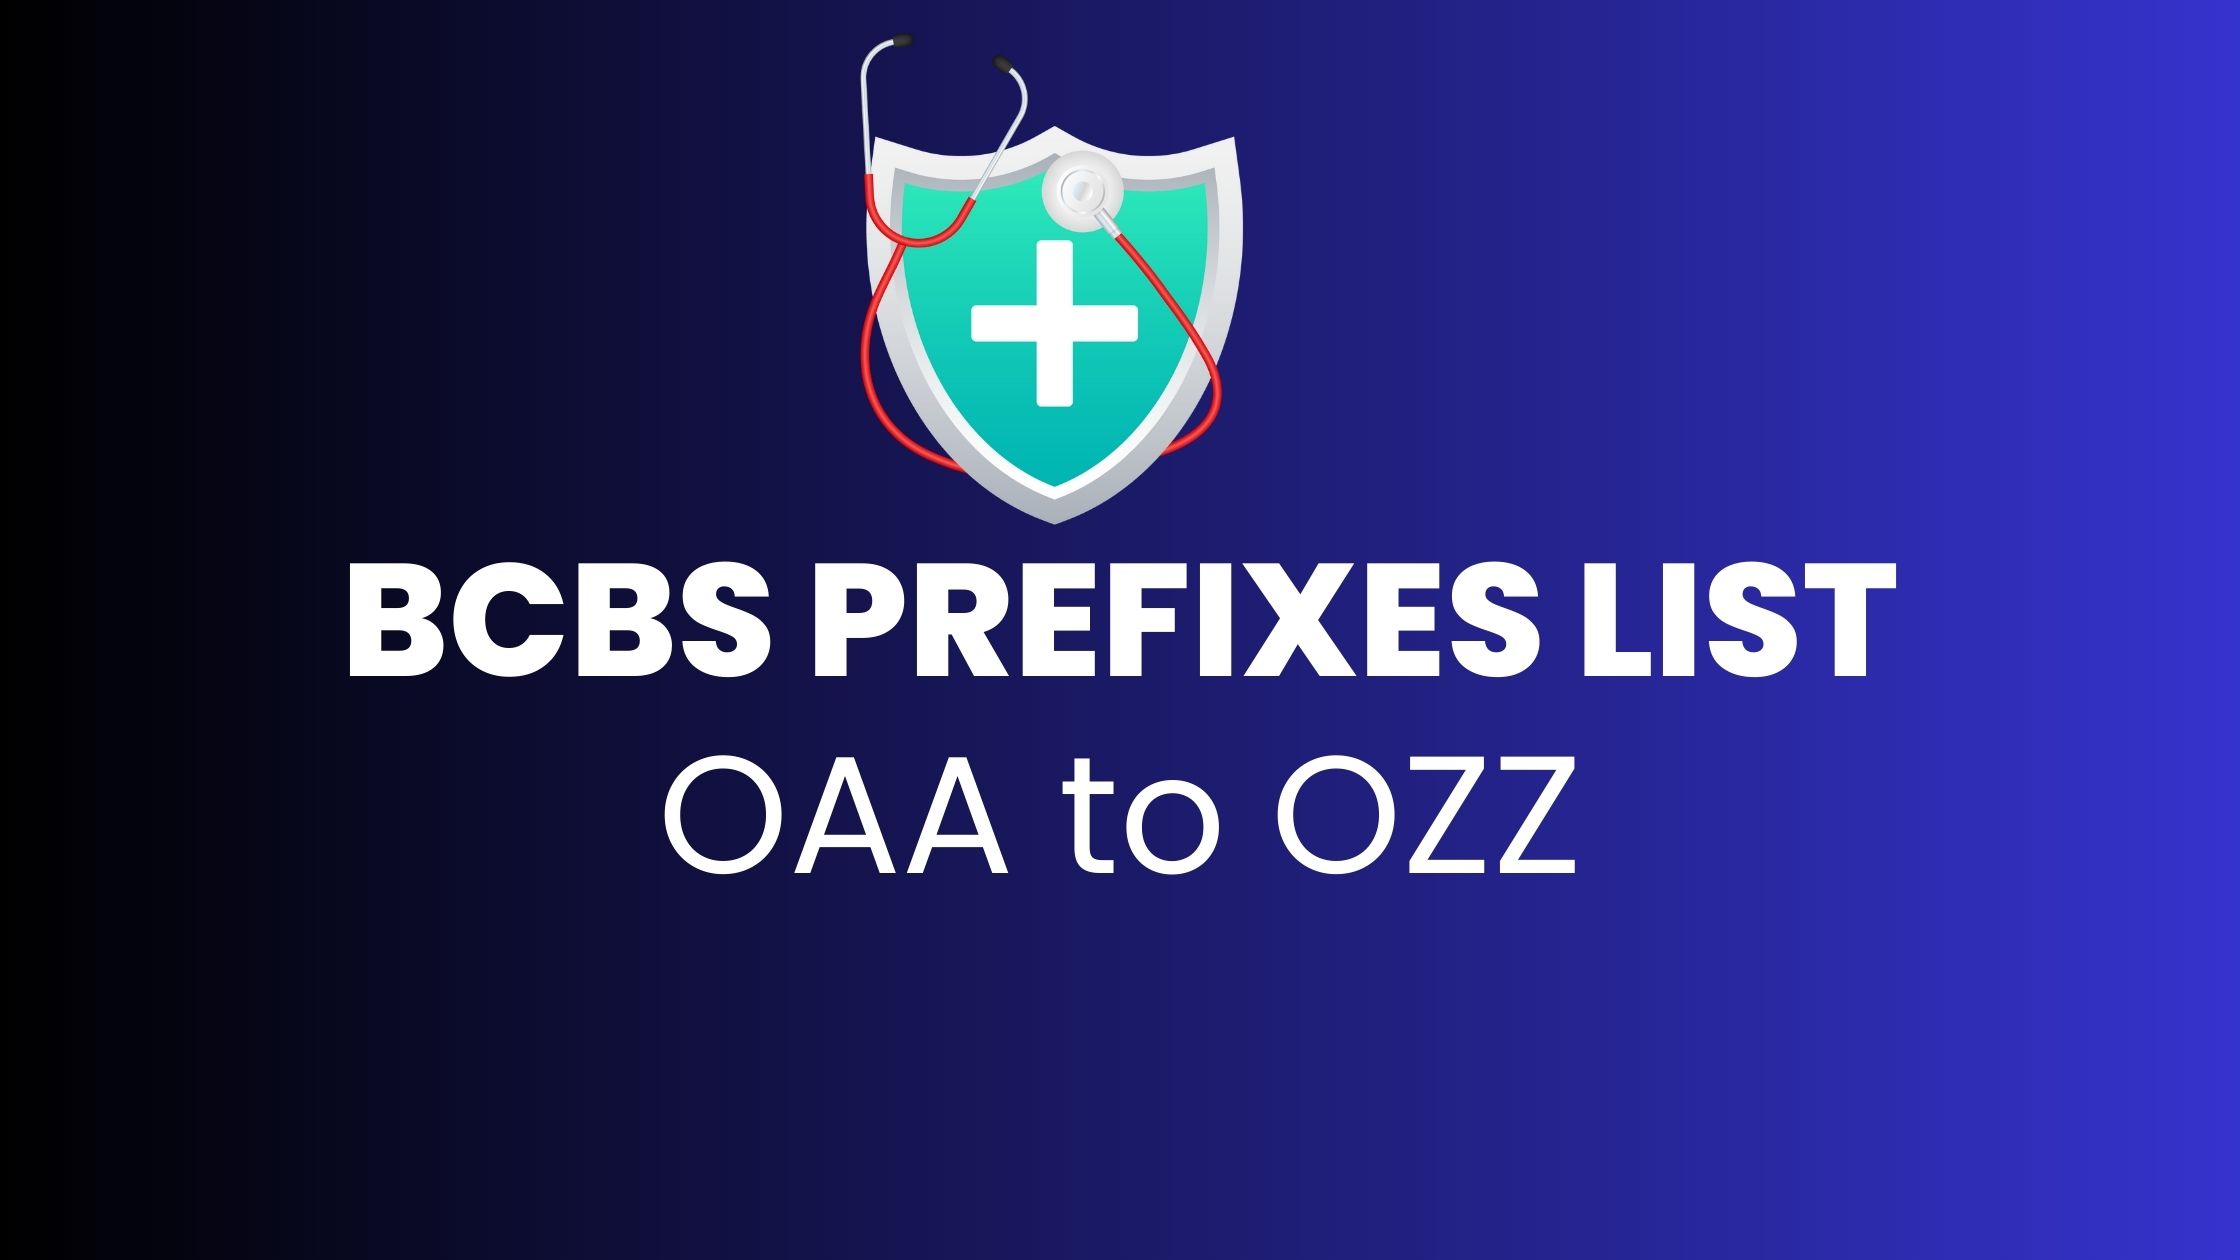 BCBS prefix OAA to OZZ